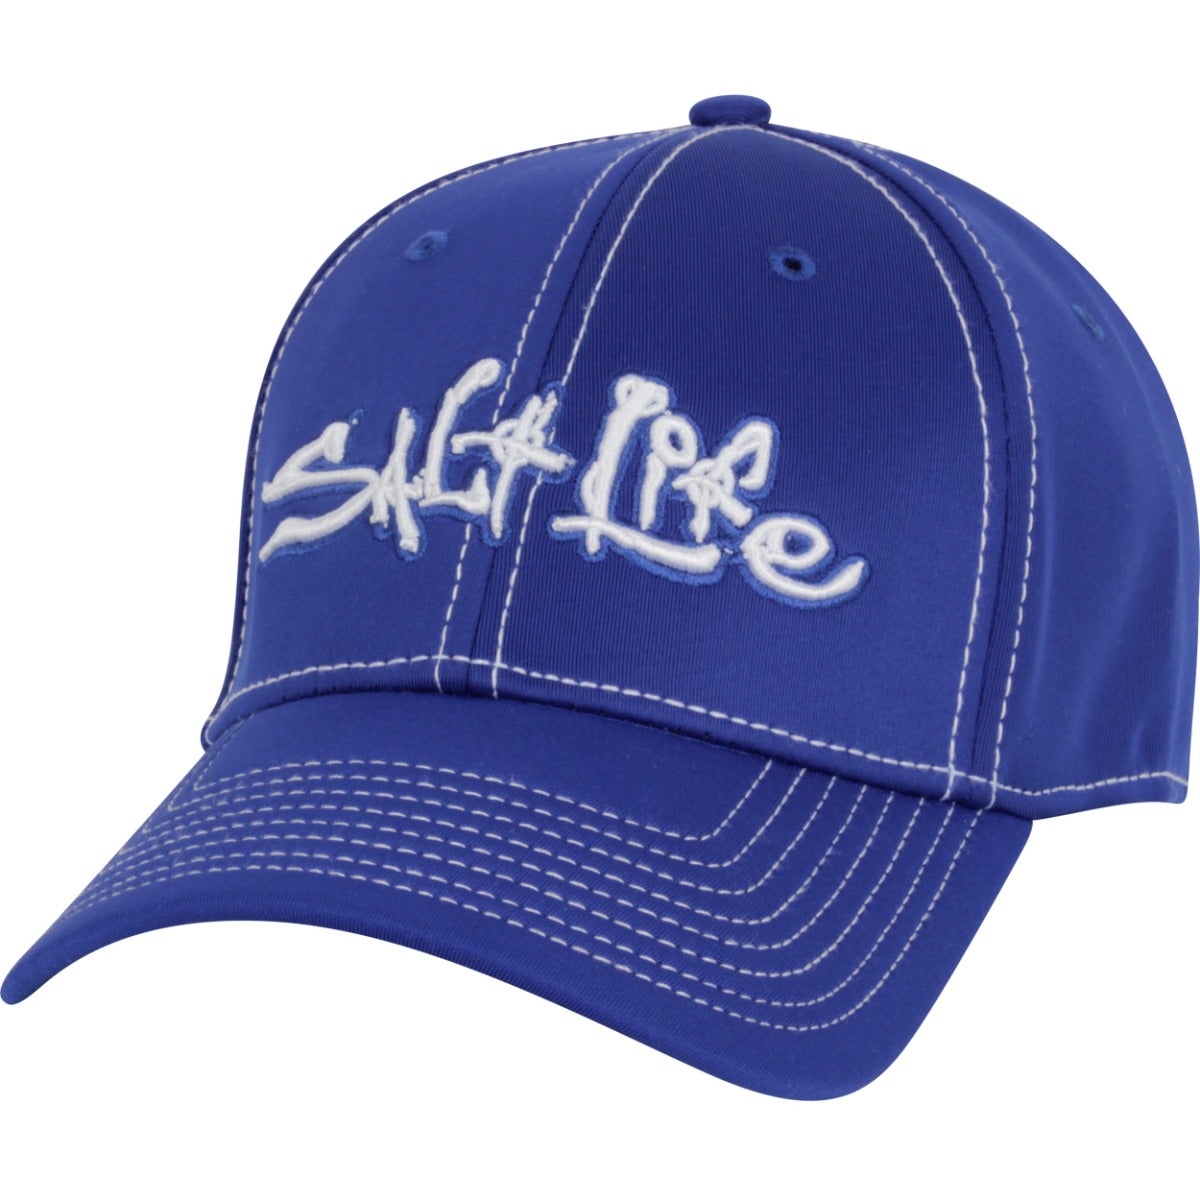 Salt Life Men's Signature Technical Hat royal front